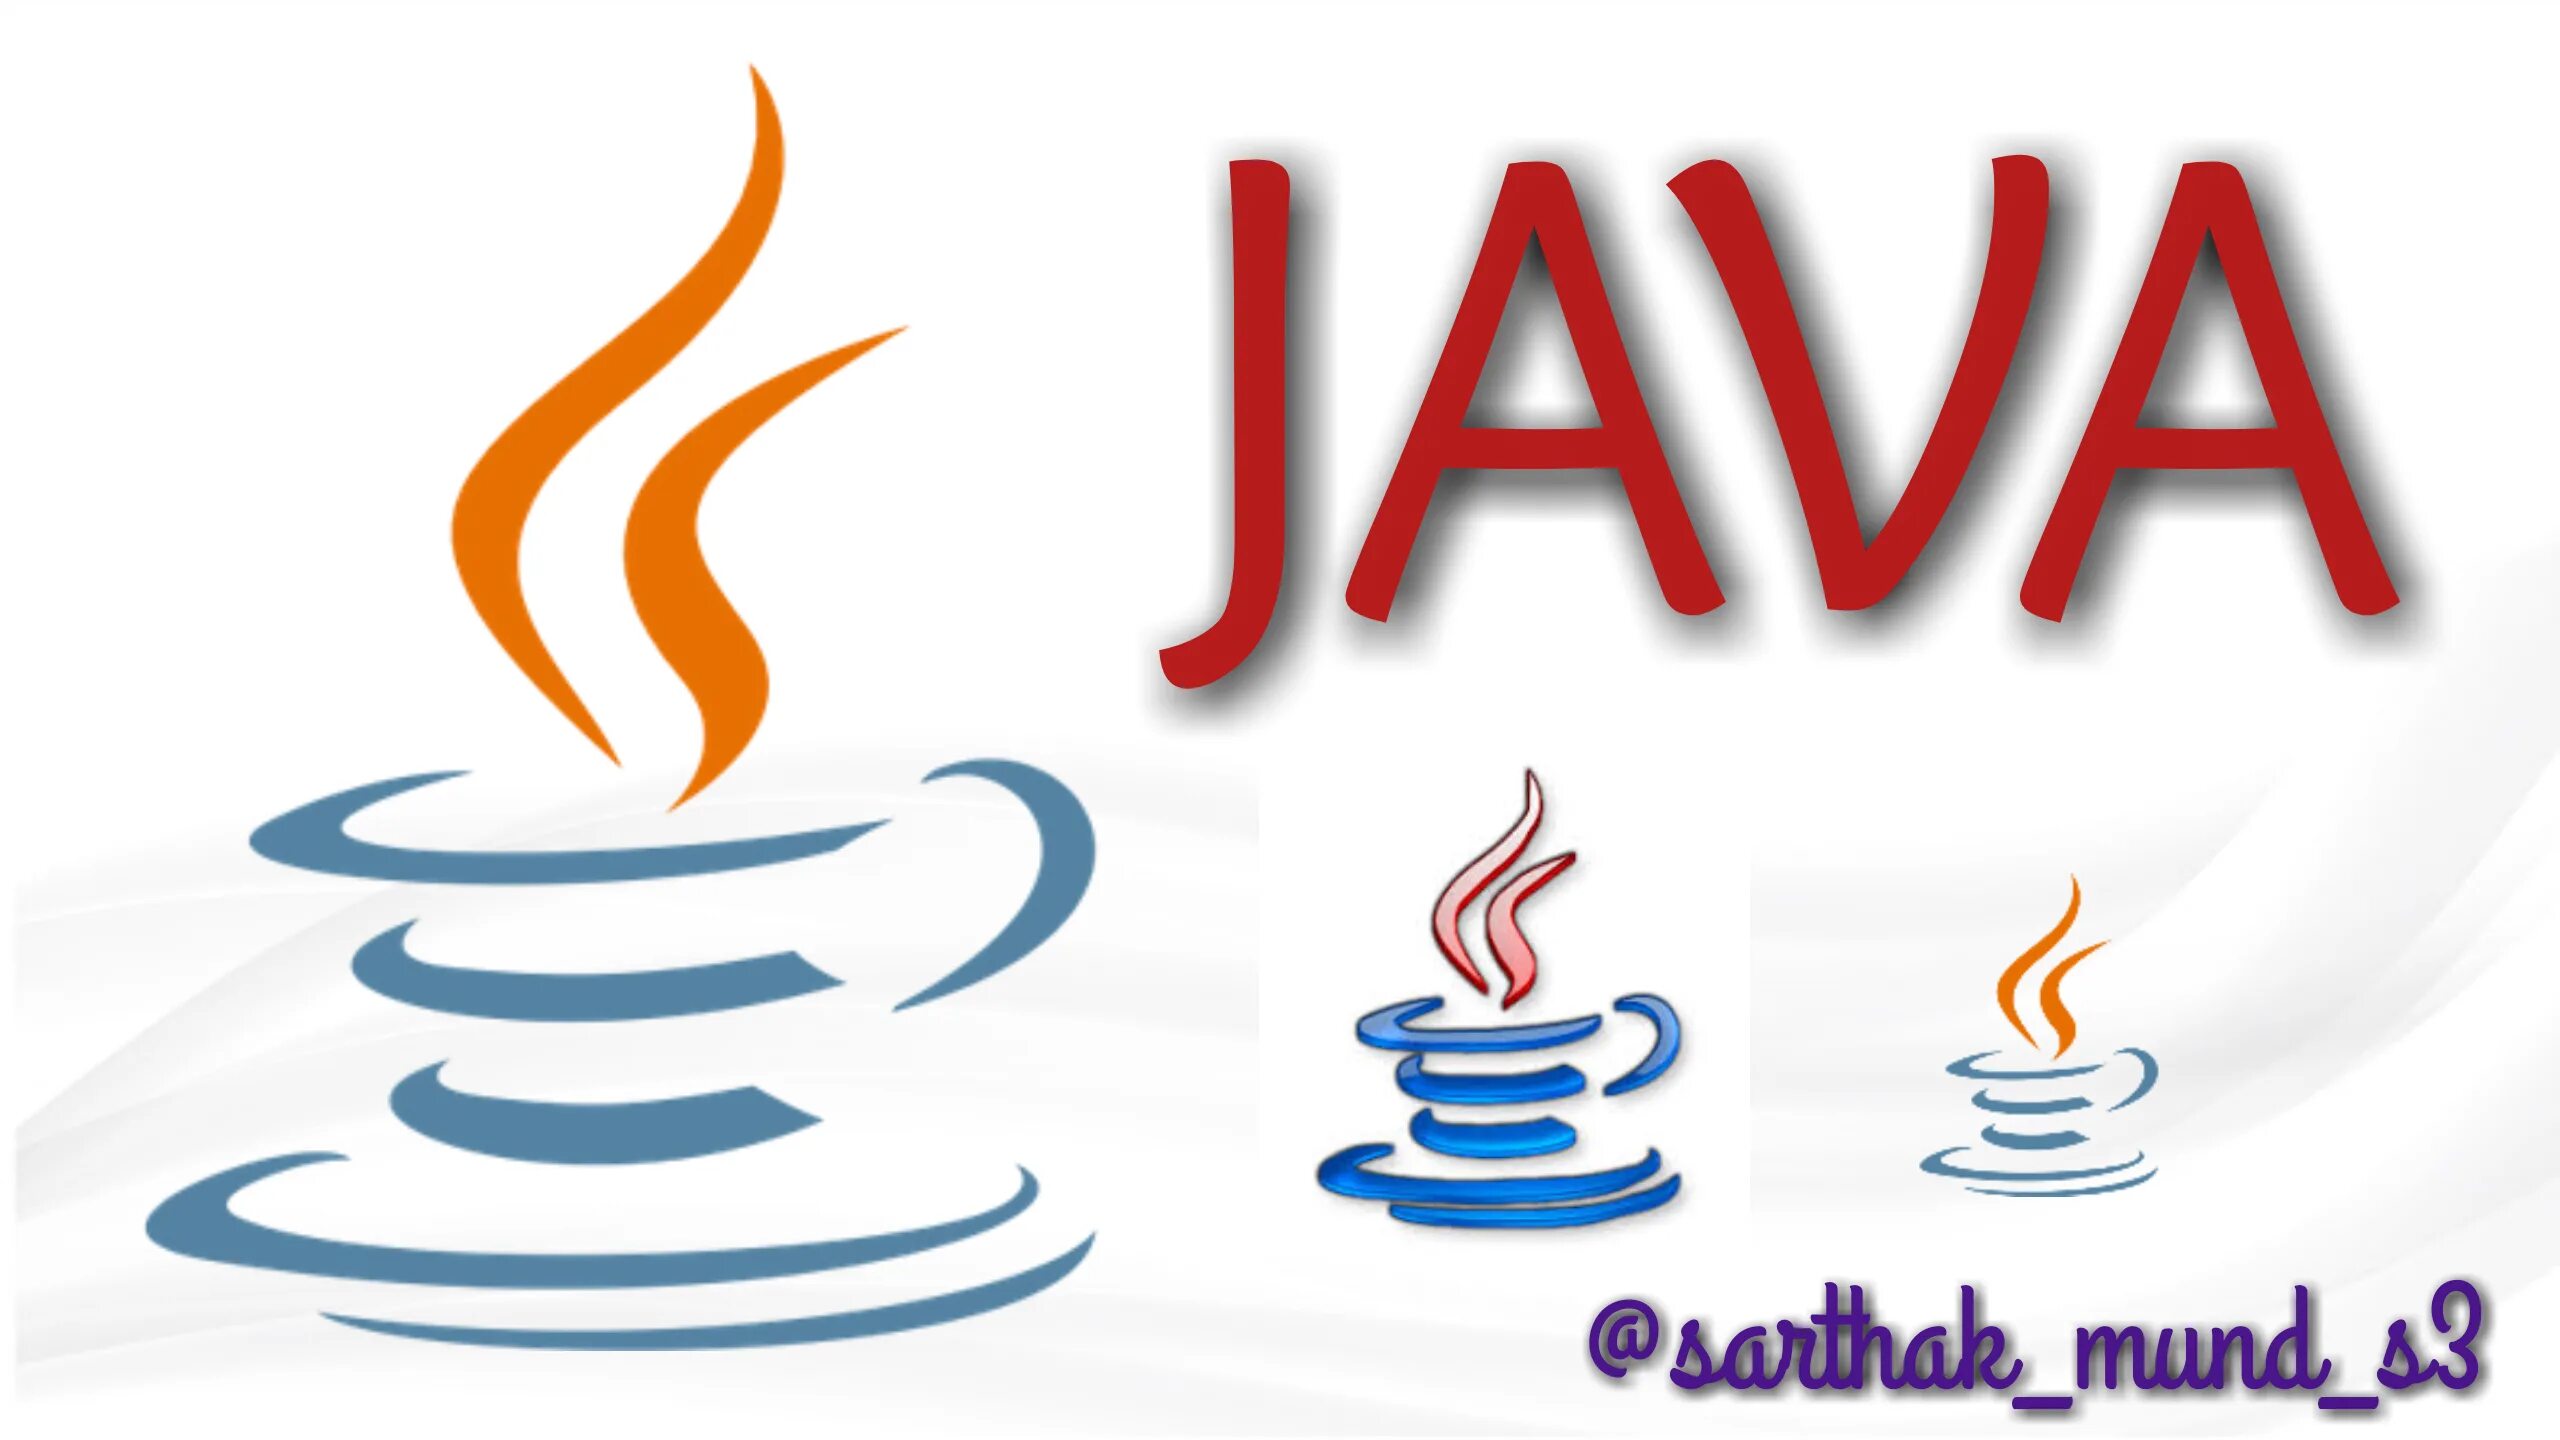 Item java. Java логотип. Значок java. Java первый логотип. Язык программирования java.